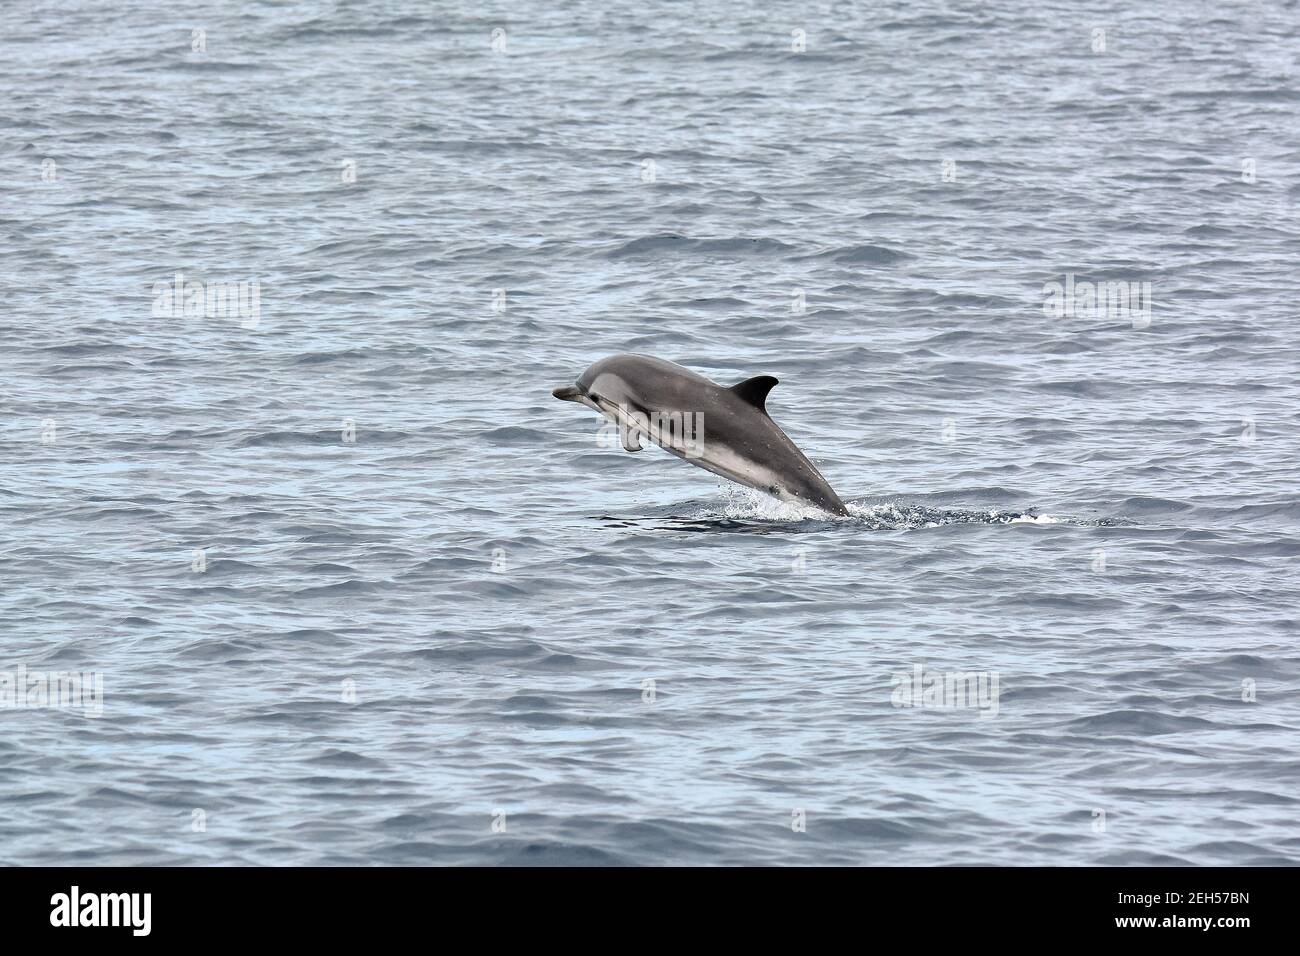 Striped dolphin, Stenella coeruleoalba, Blau-Weißer Delfin, Streifendelfin, csíkos delfin, São Miguel Island, Azores, Açores, Portugal, Europe Stock Photo